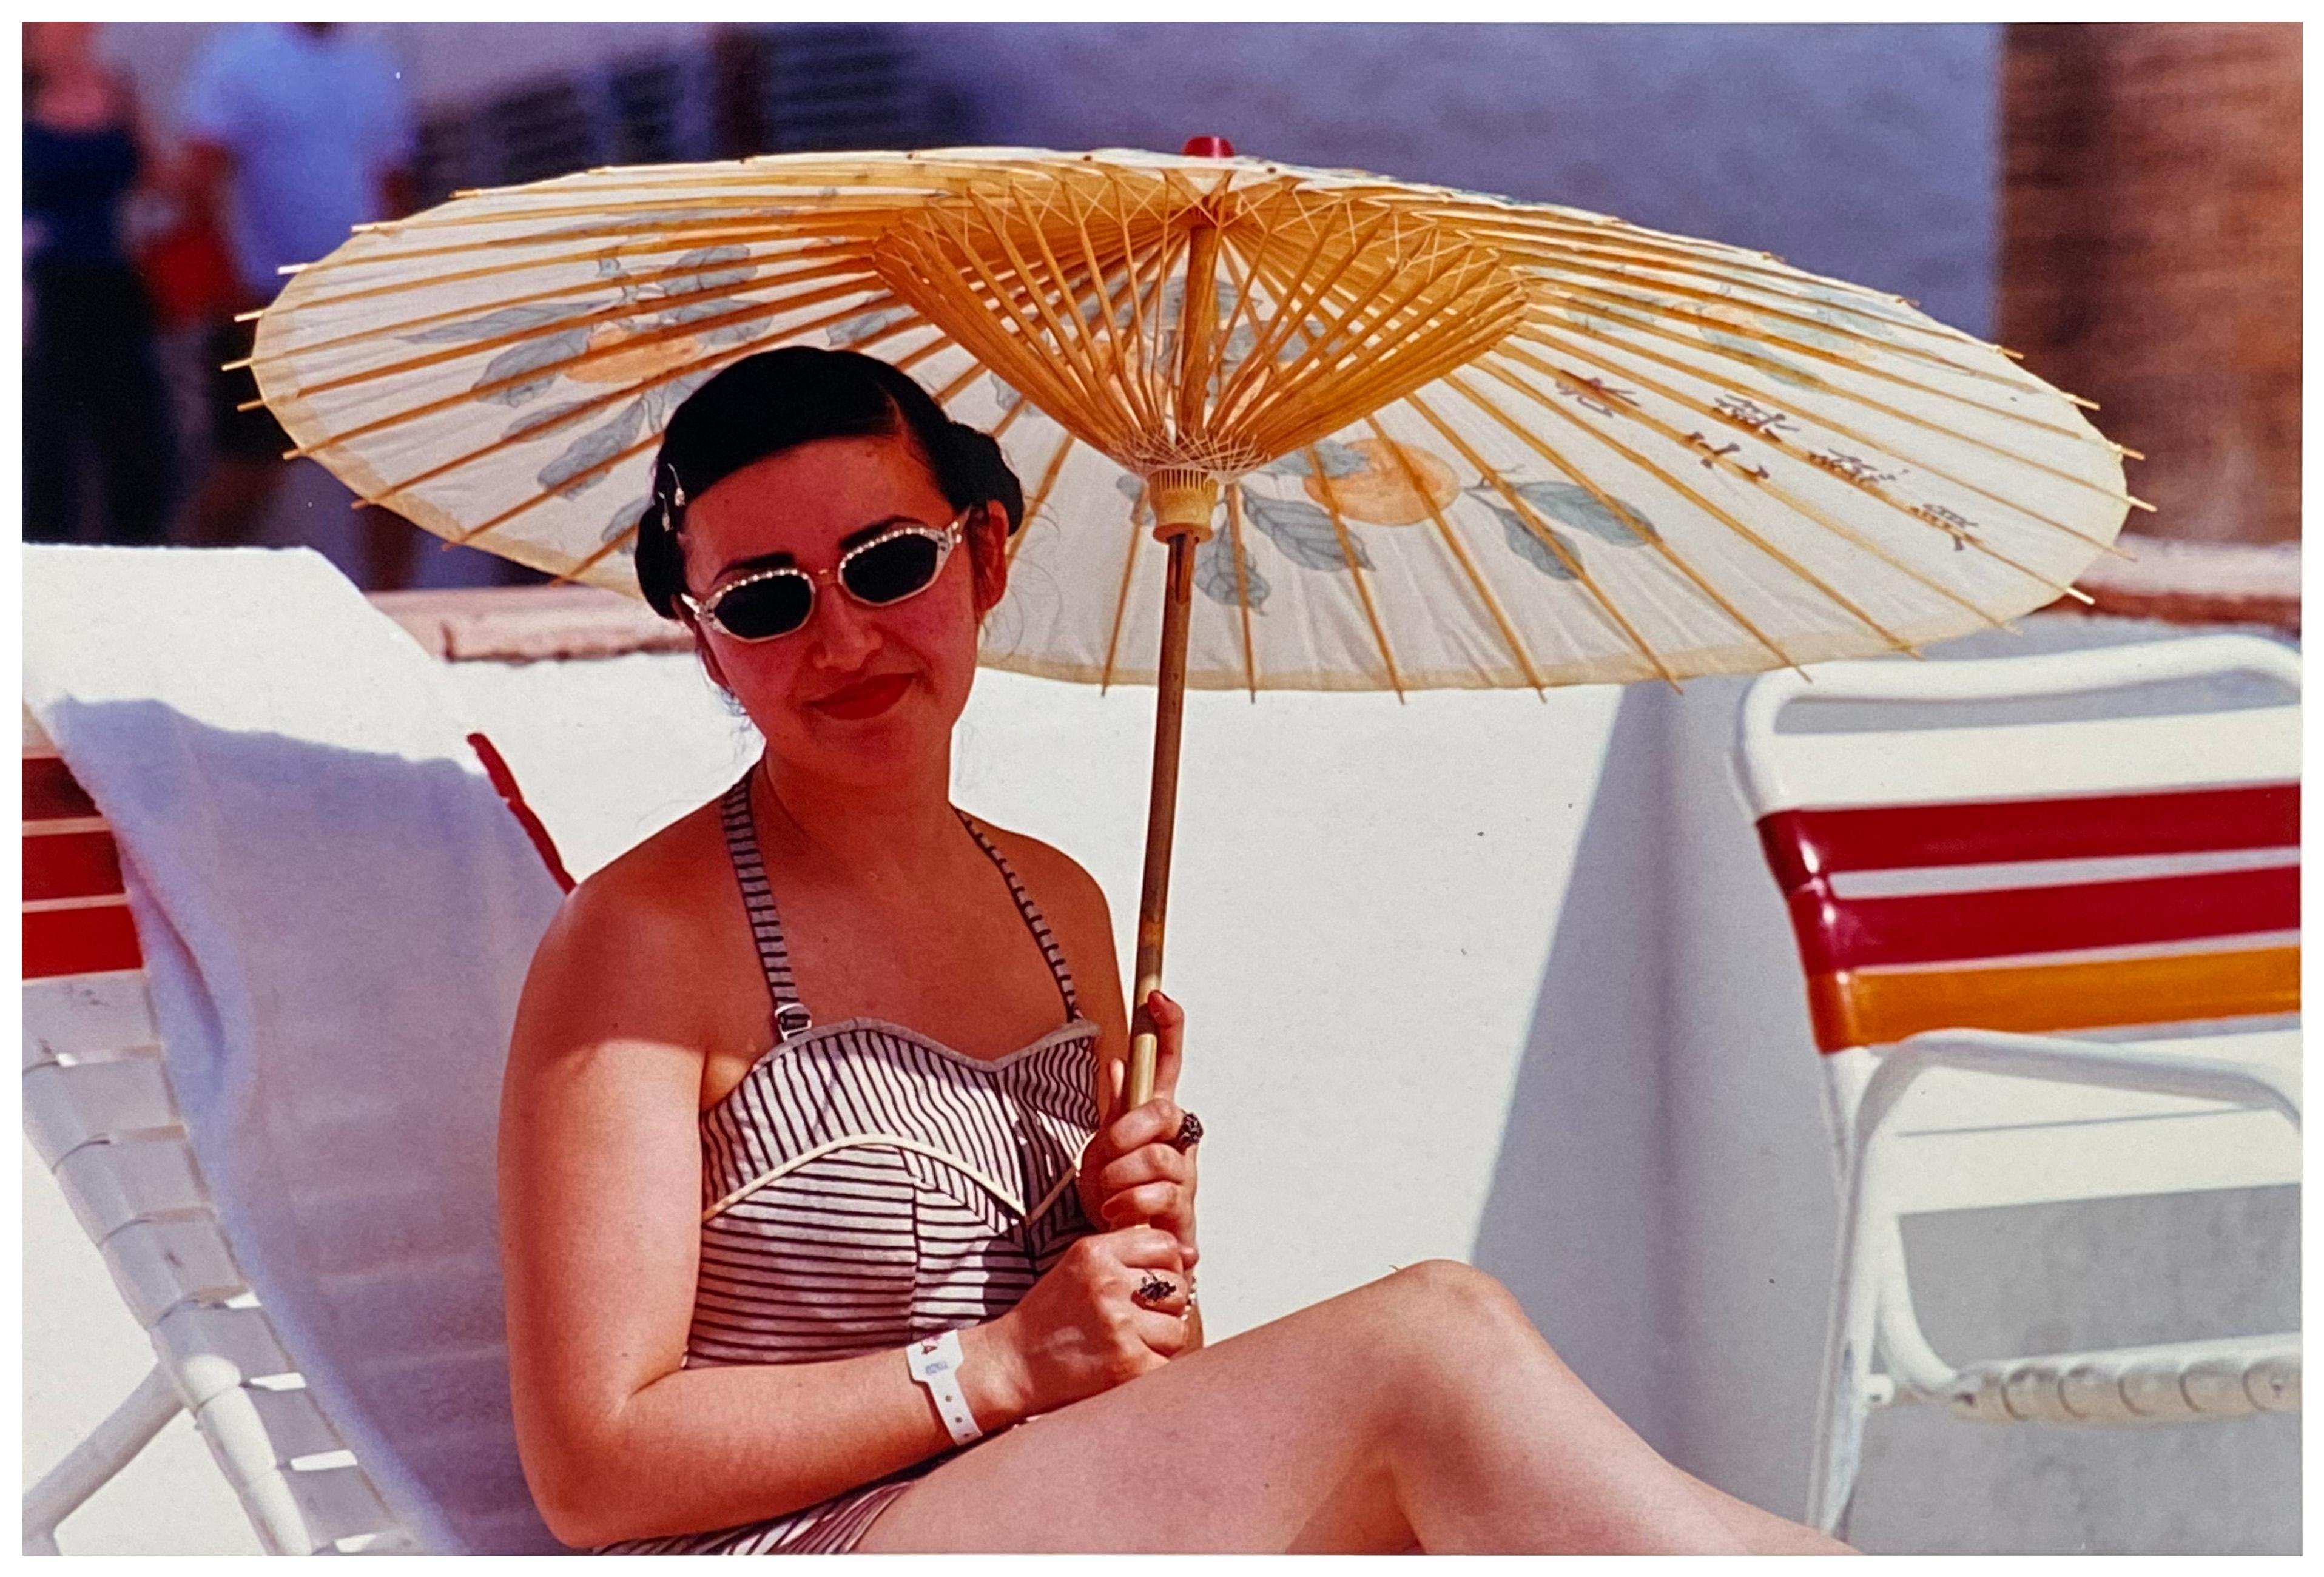 Color Photograph Richard Heeps - Poolside, Las Vegas - Photographie de portrait contemporain en couleur vintage